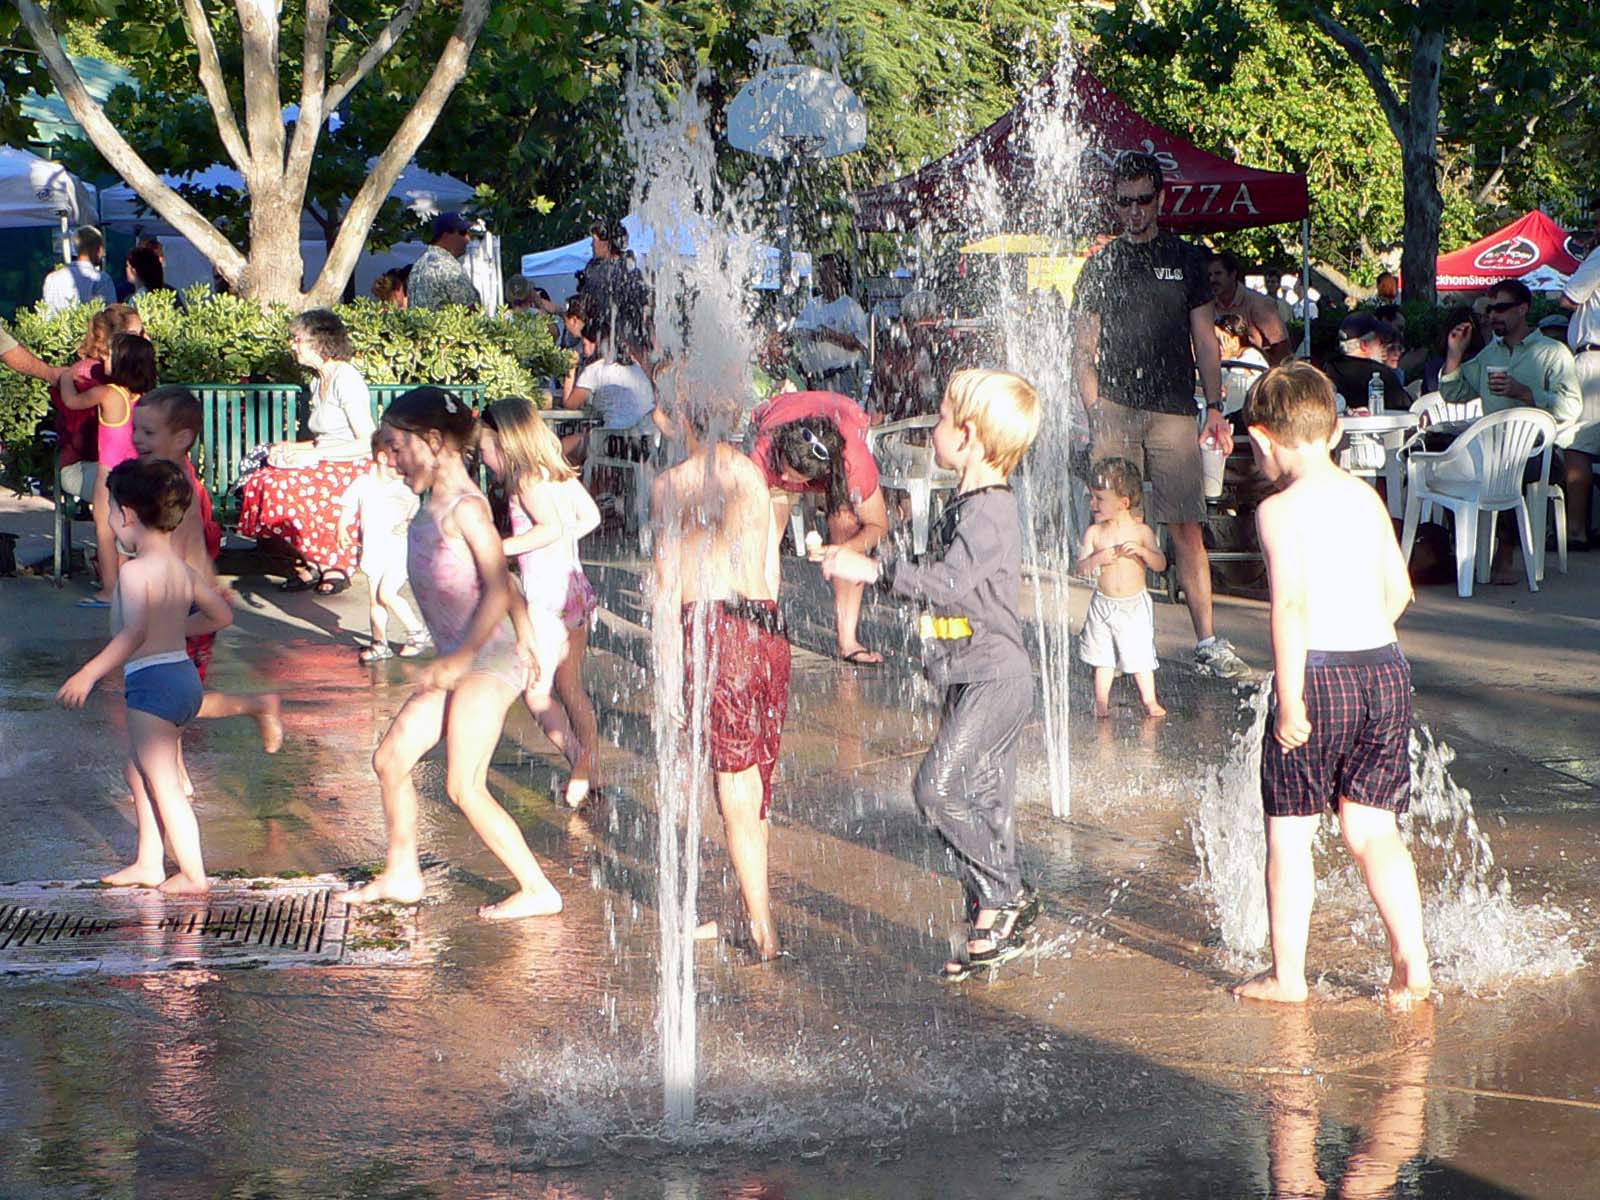 File:Fountain Fun.jpg - Wikimedia Commons